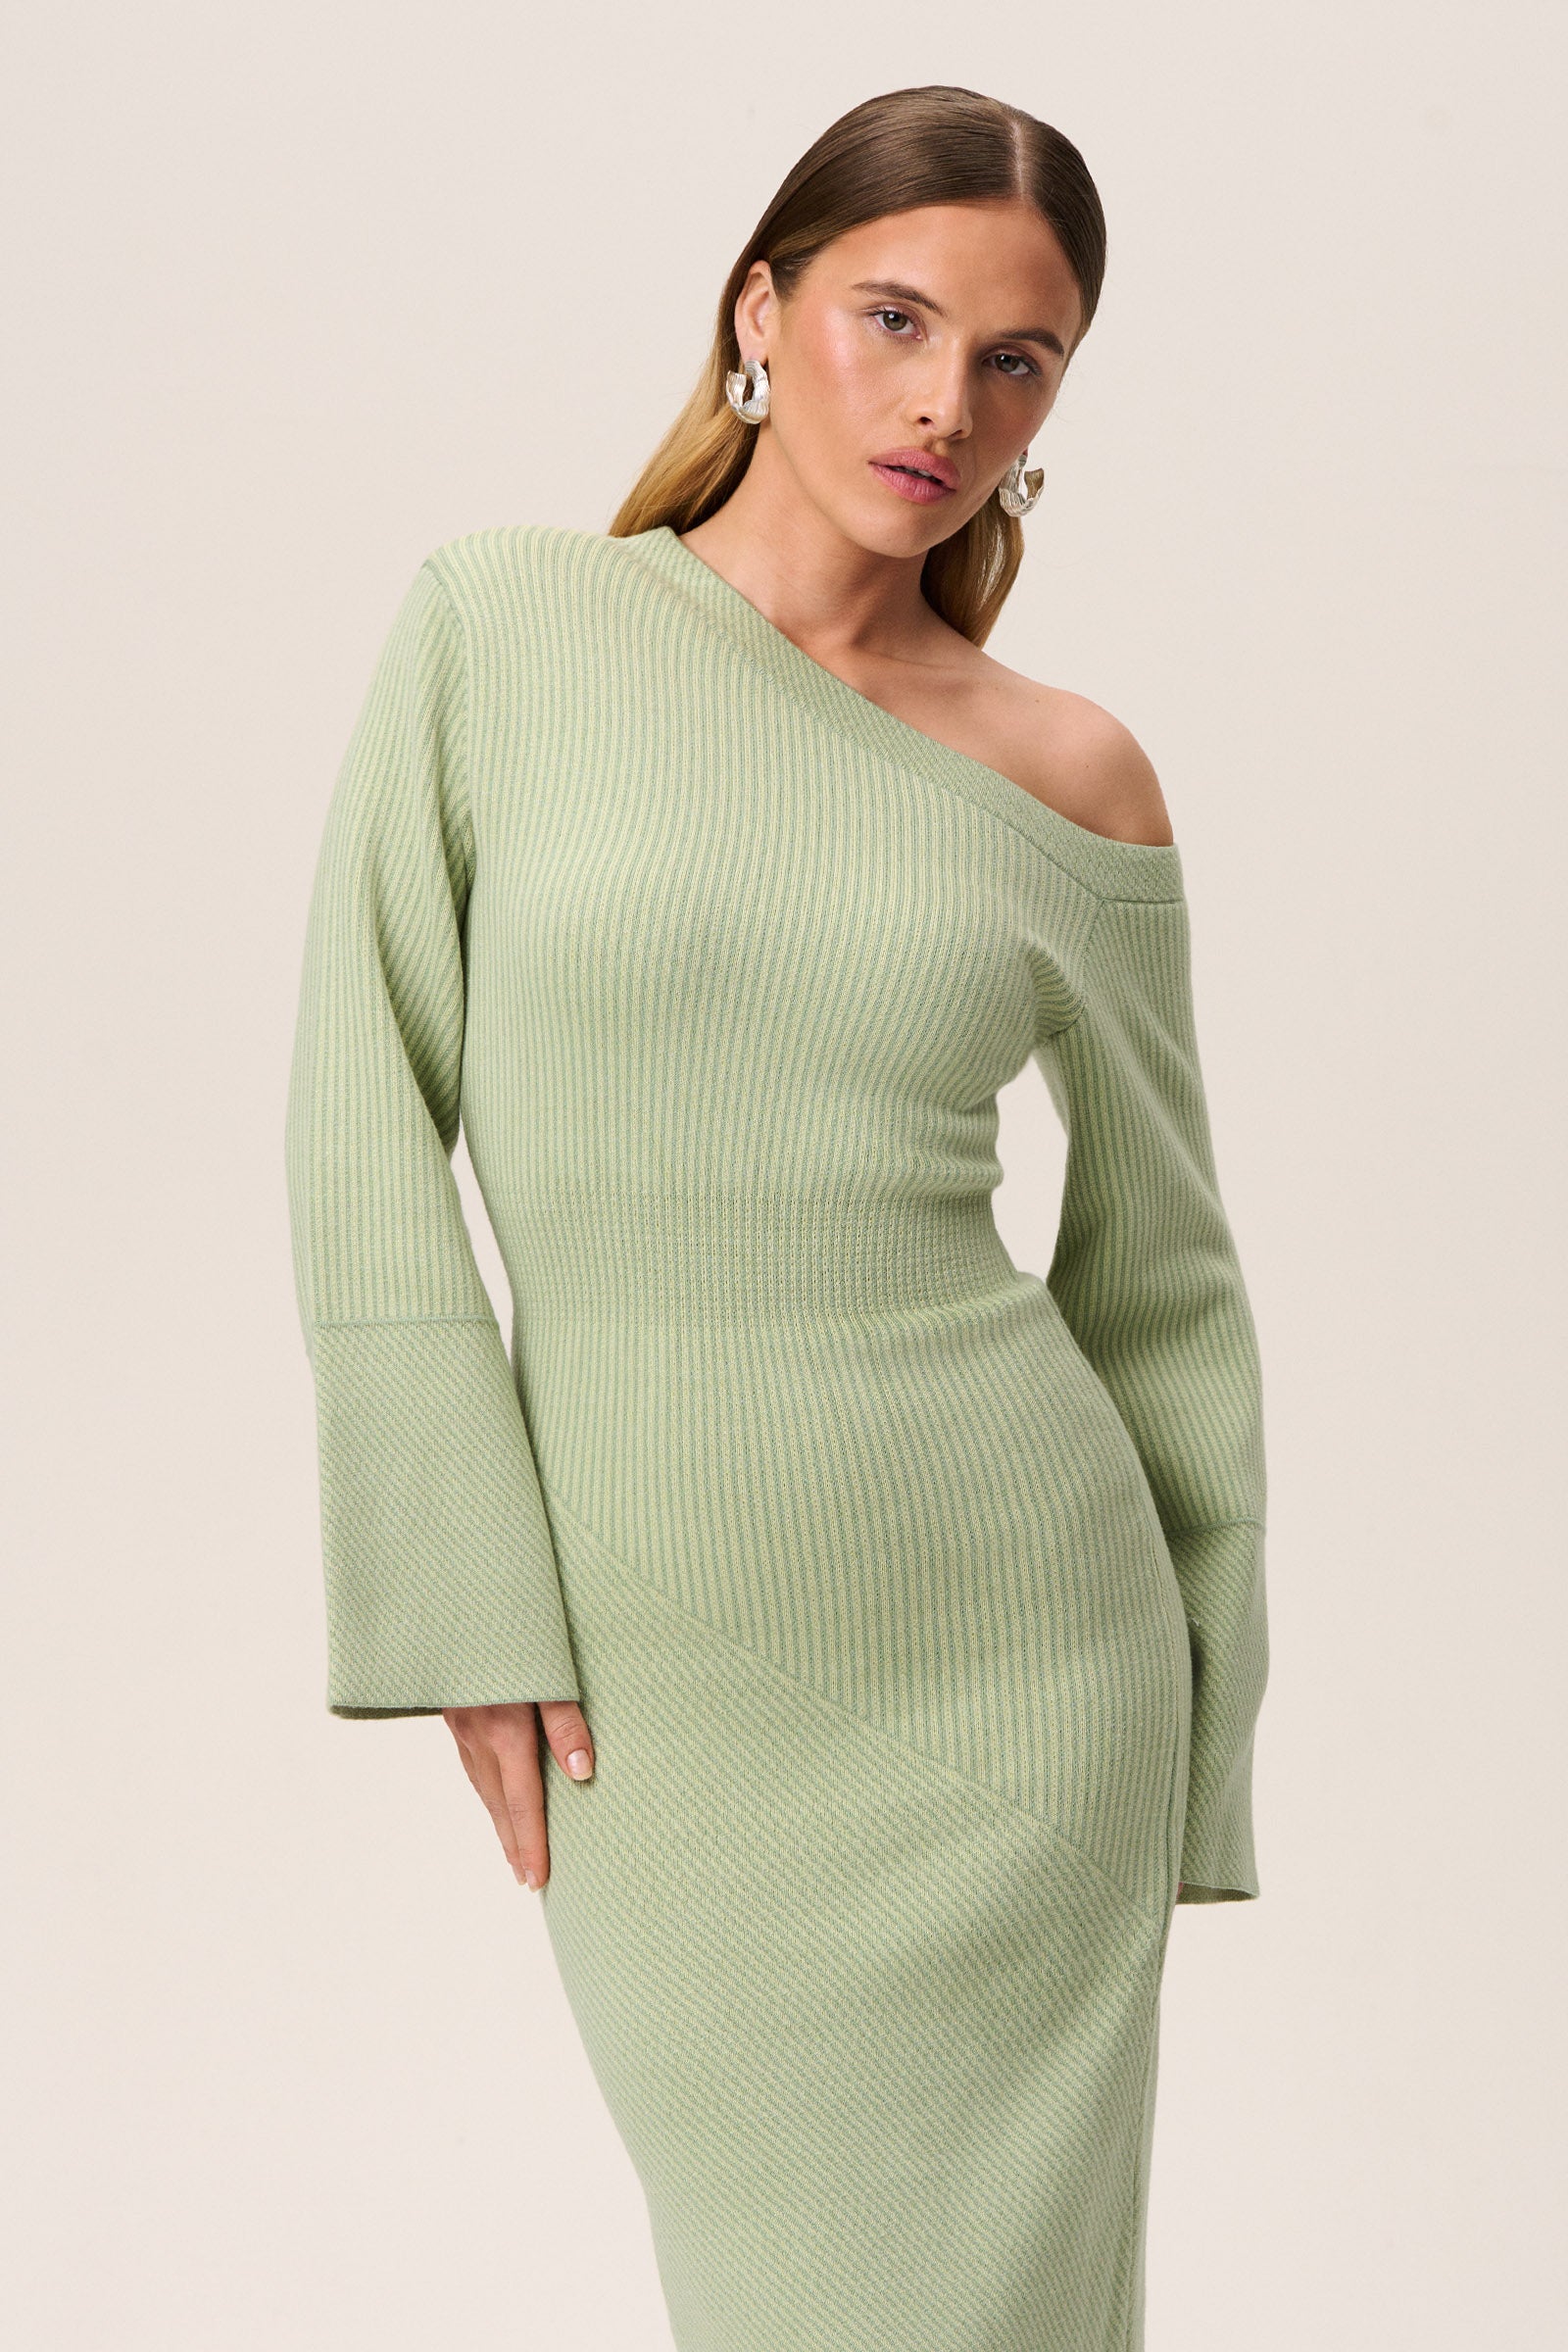 https://adoore.se/cdn/shop/files/bolzano-knitted-dress-green-3.jpg?v=1706797649&width=1600